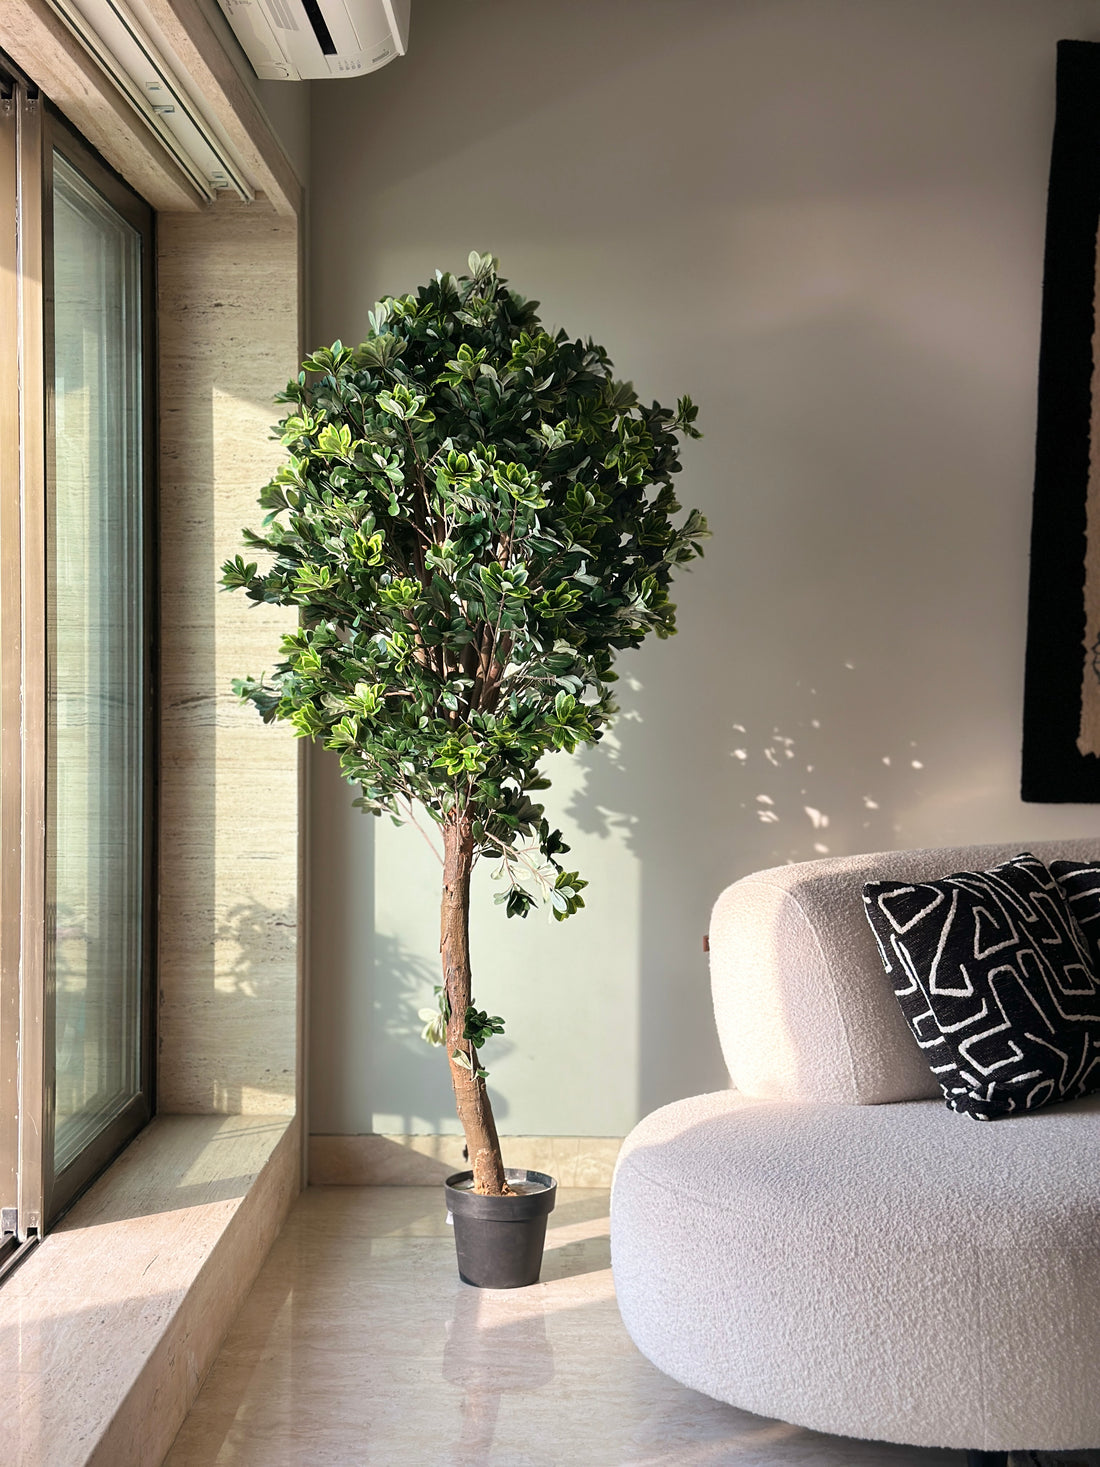 Indoor 6 ft. Elegant Ficus Artificial Tree